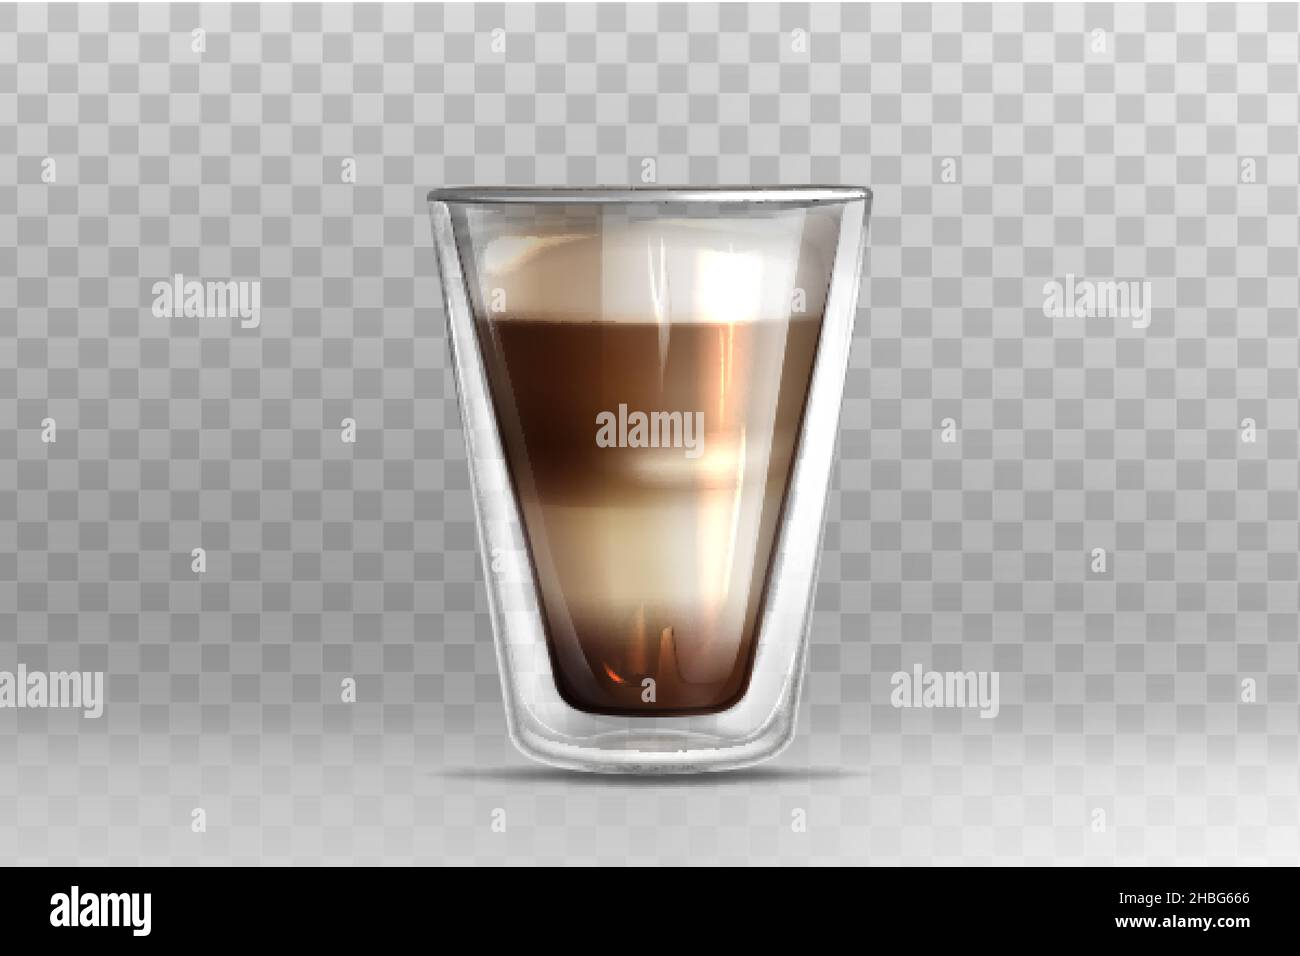 Illustration vectorielle réaliste du café chaud dans une tasse en verre avec double paroi sur fond transparent.Cappuccino ou latte avec mousse de lait sur le dessus.Modèle de maquette pour le marquage ou la conception de produits. Illustration de Vecteur